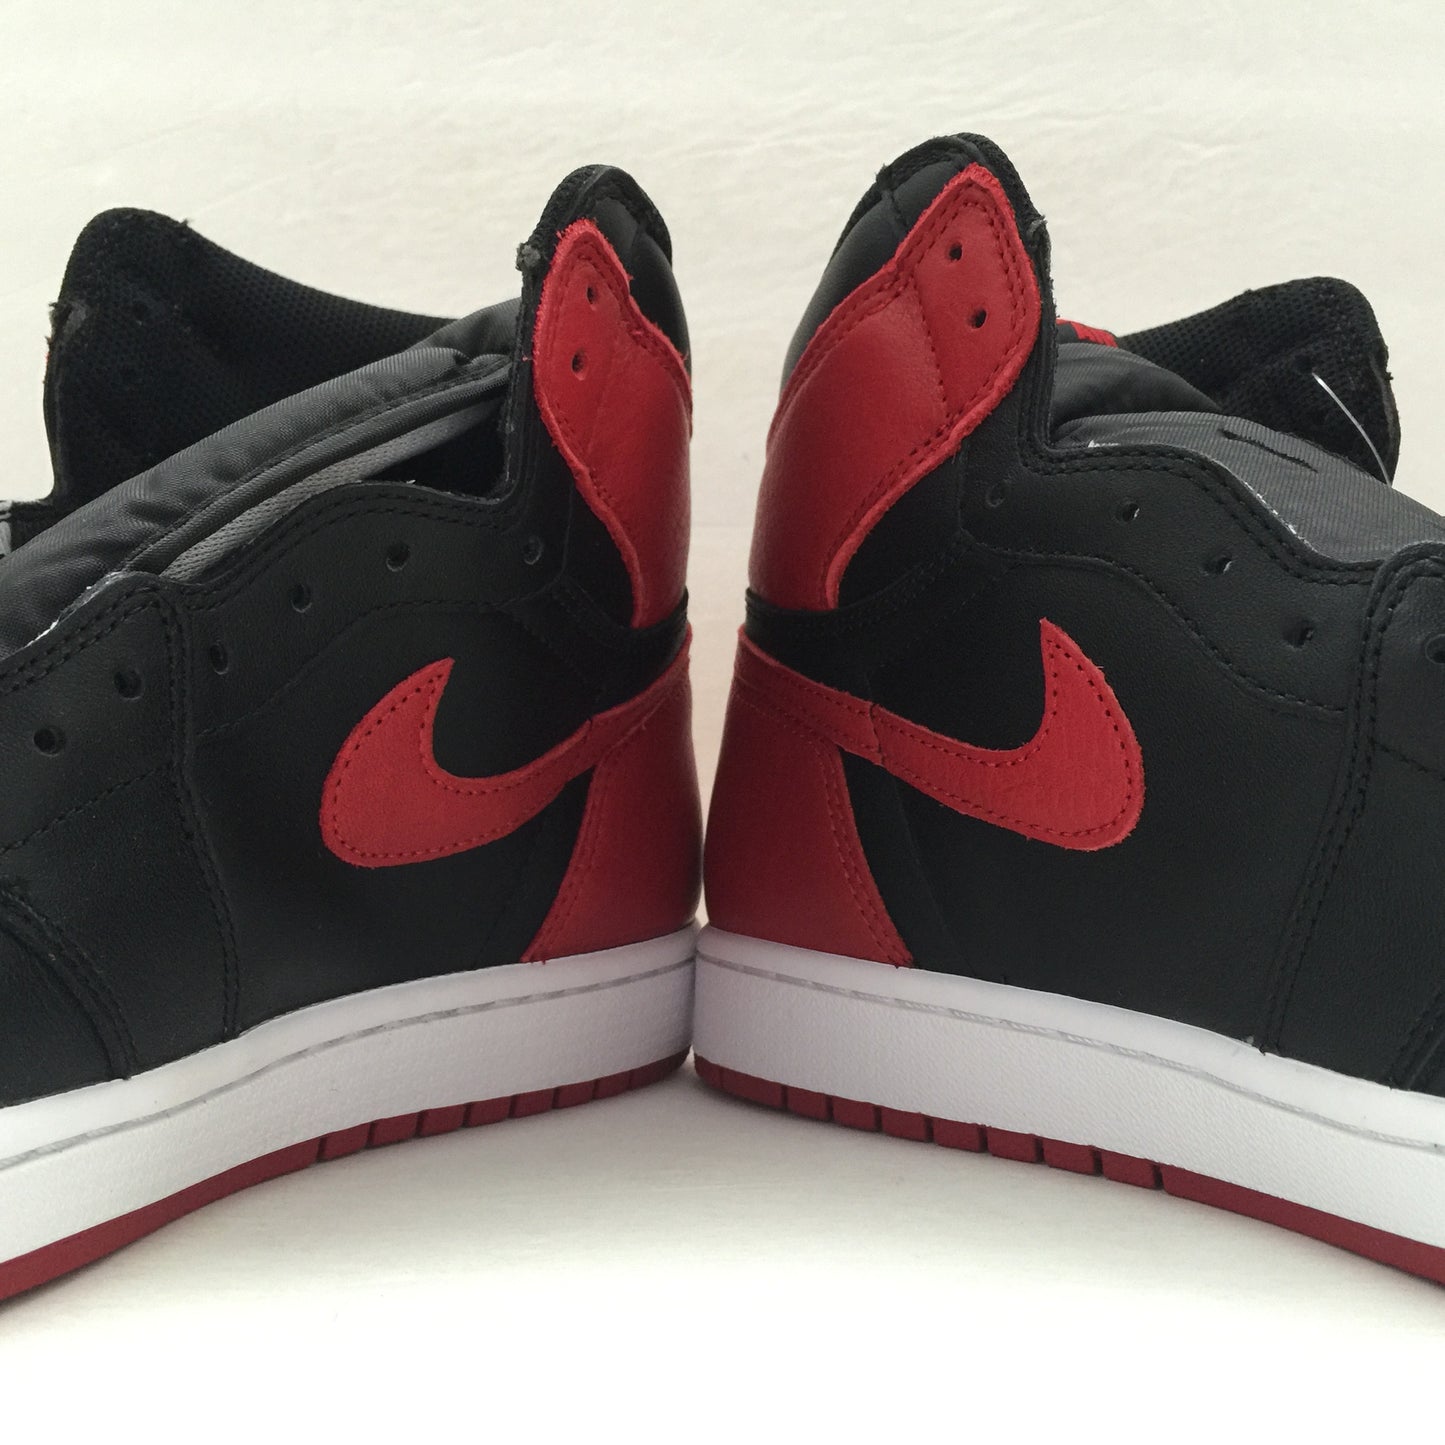 DS Nike Air Jordan 1 I High OG Banned Size 10/Size 10.5/Size 11.5/Size 12/Size 13/Size 14 - DOPEFOOT
 - 4